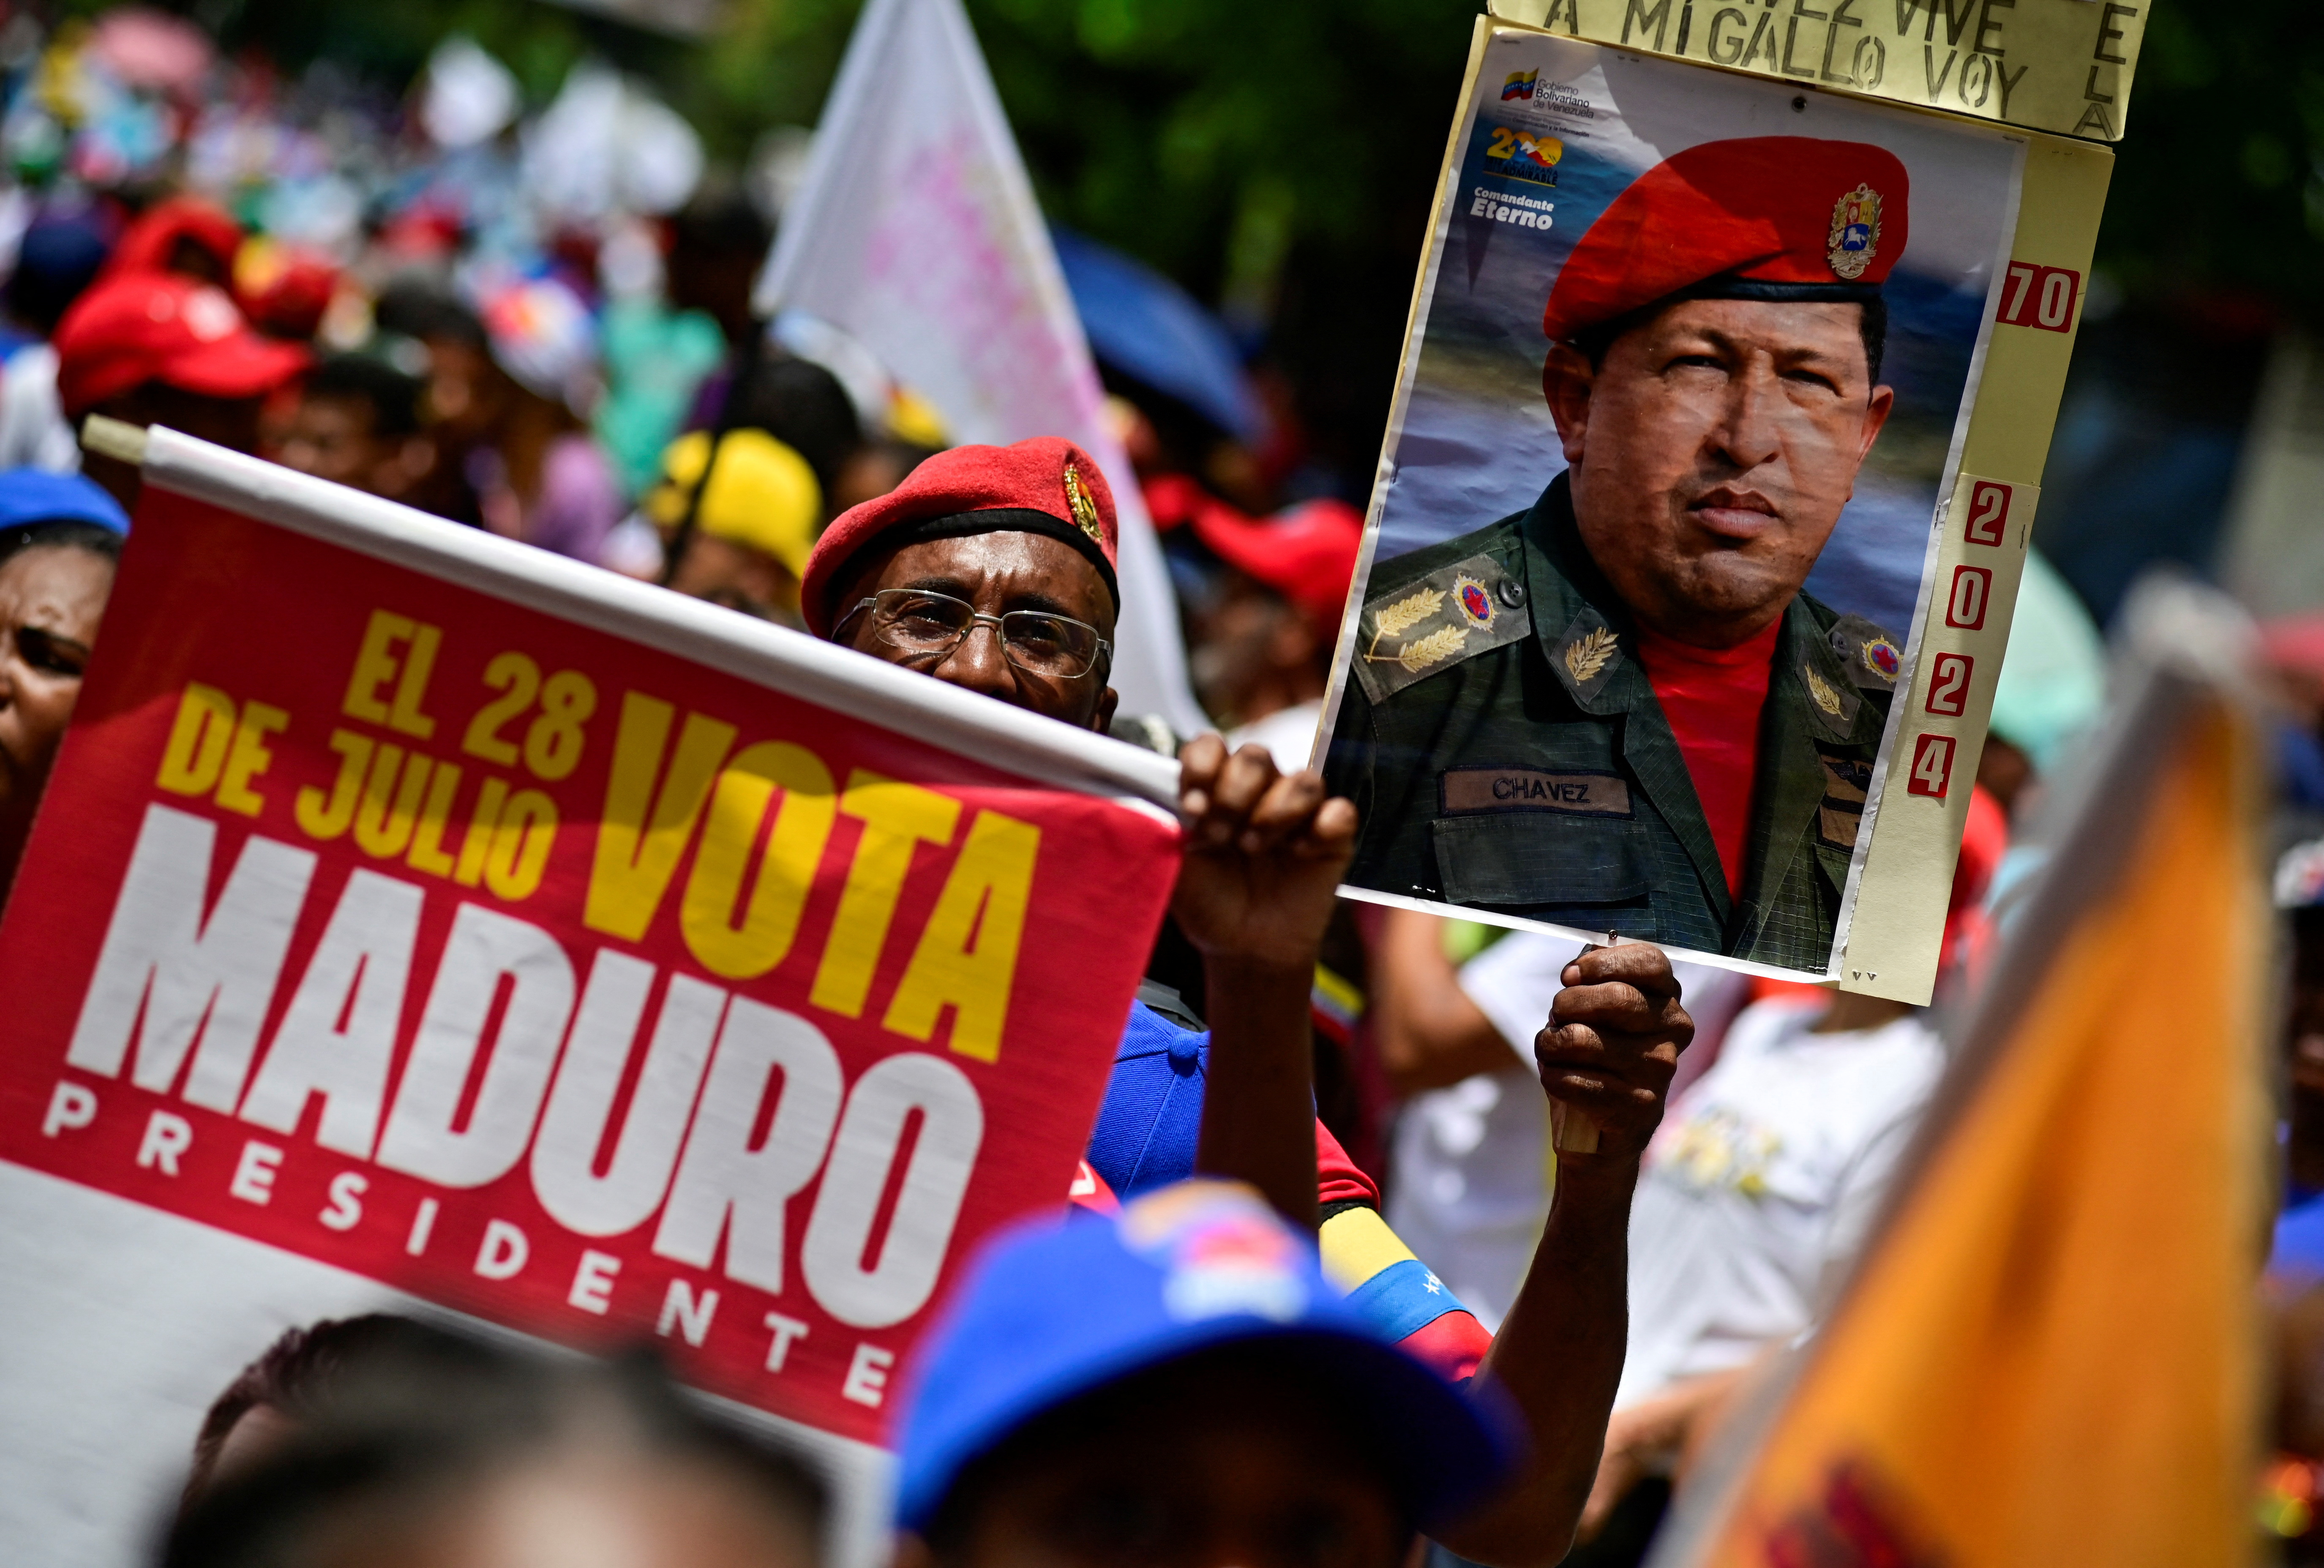 US warns Venezuela’s Maduro of need for free election on Sunday